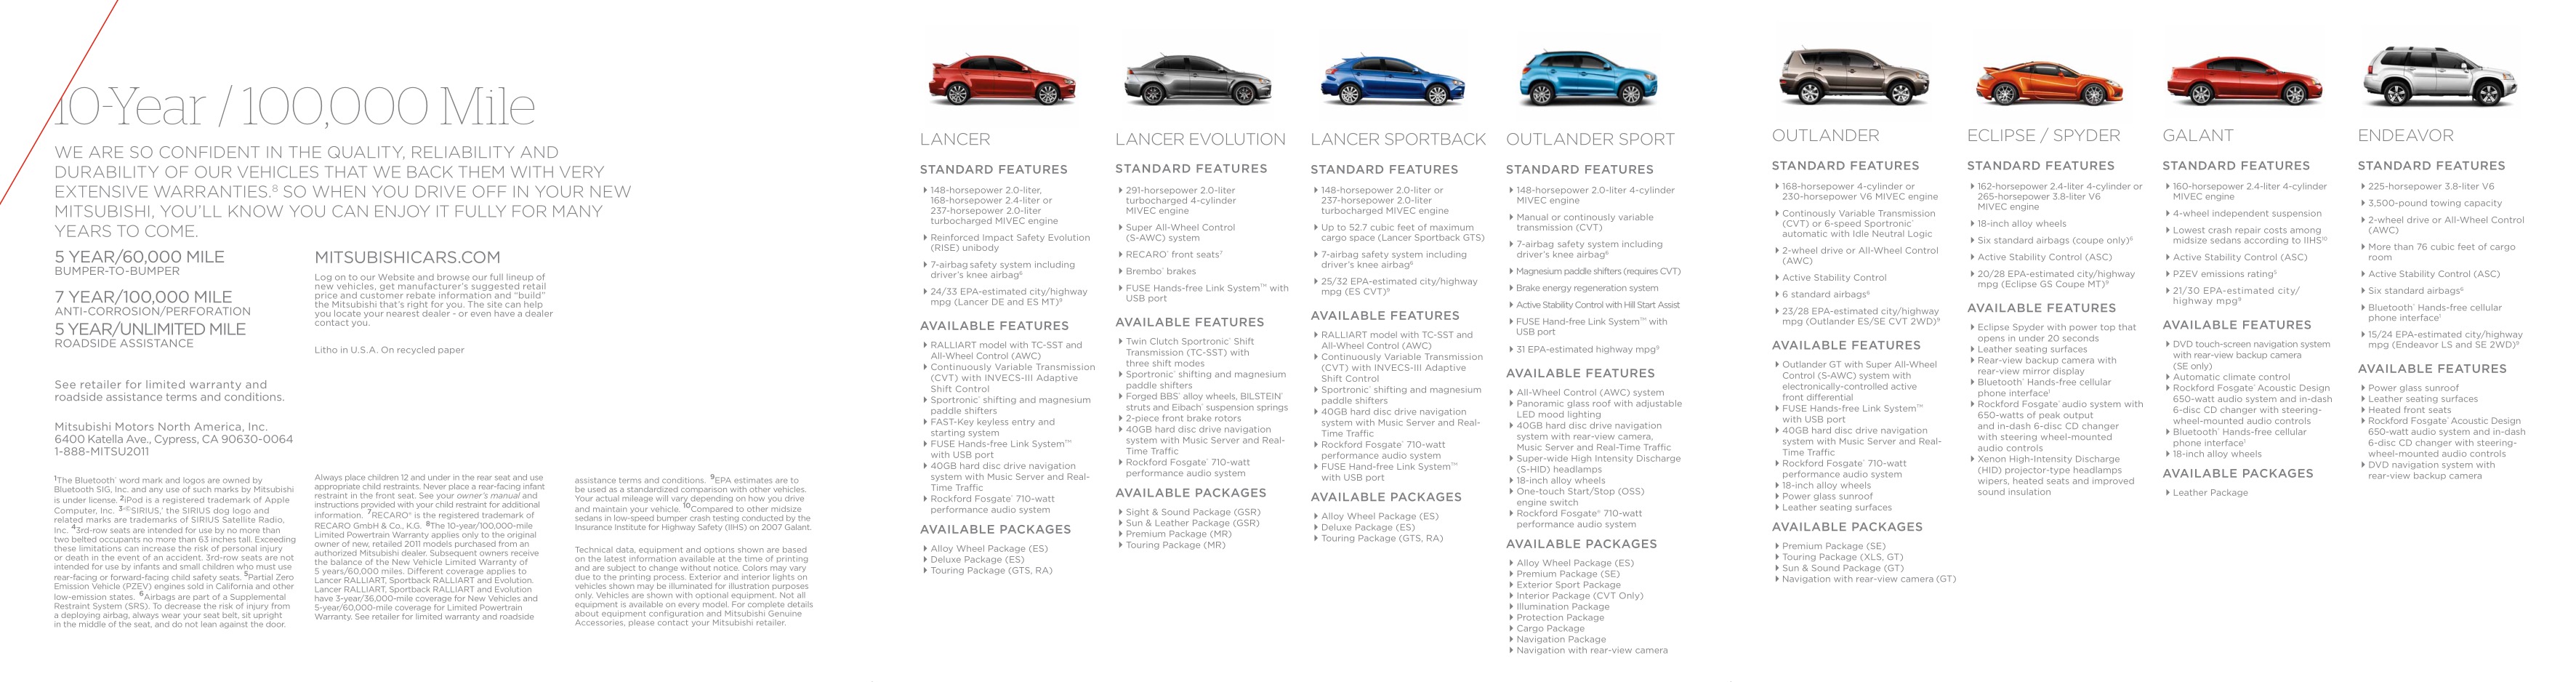 2011 Mitsubishi Full Line Brochure Page 6